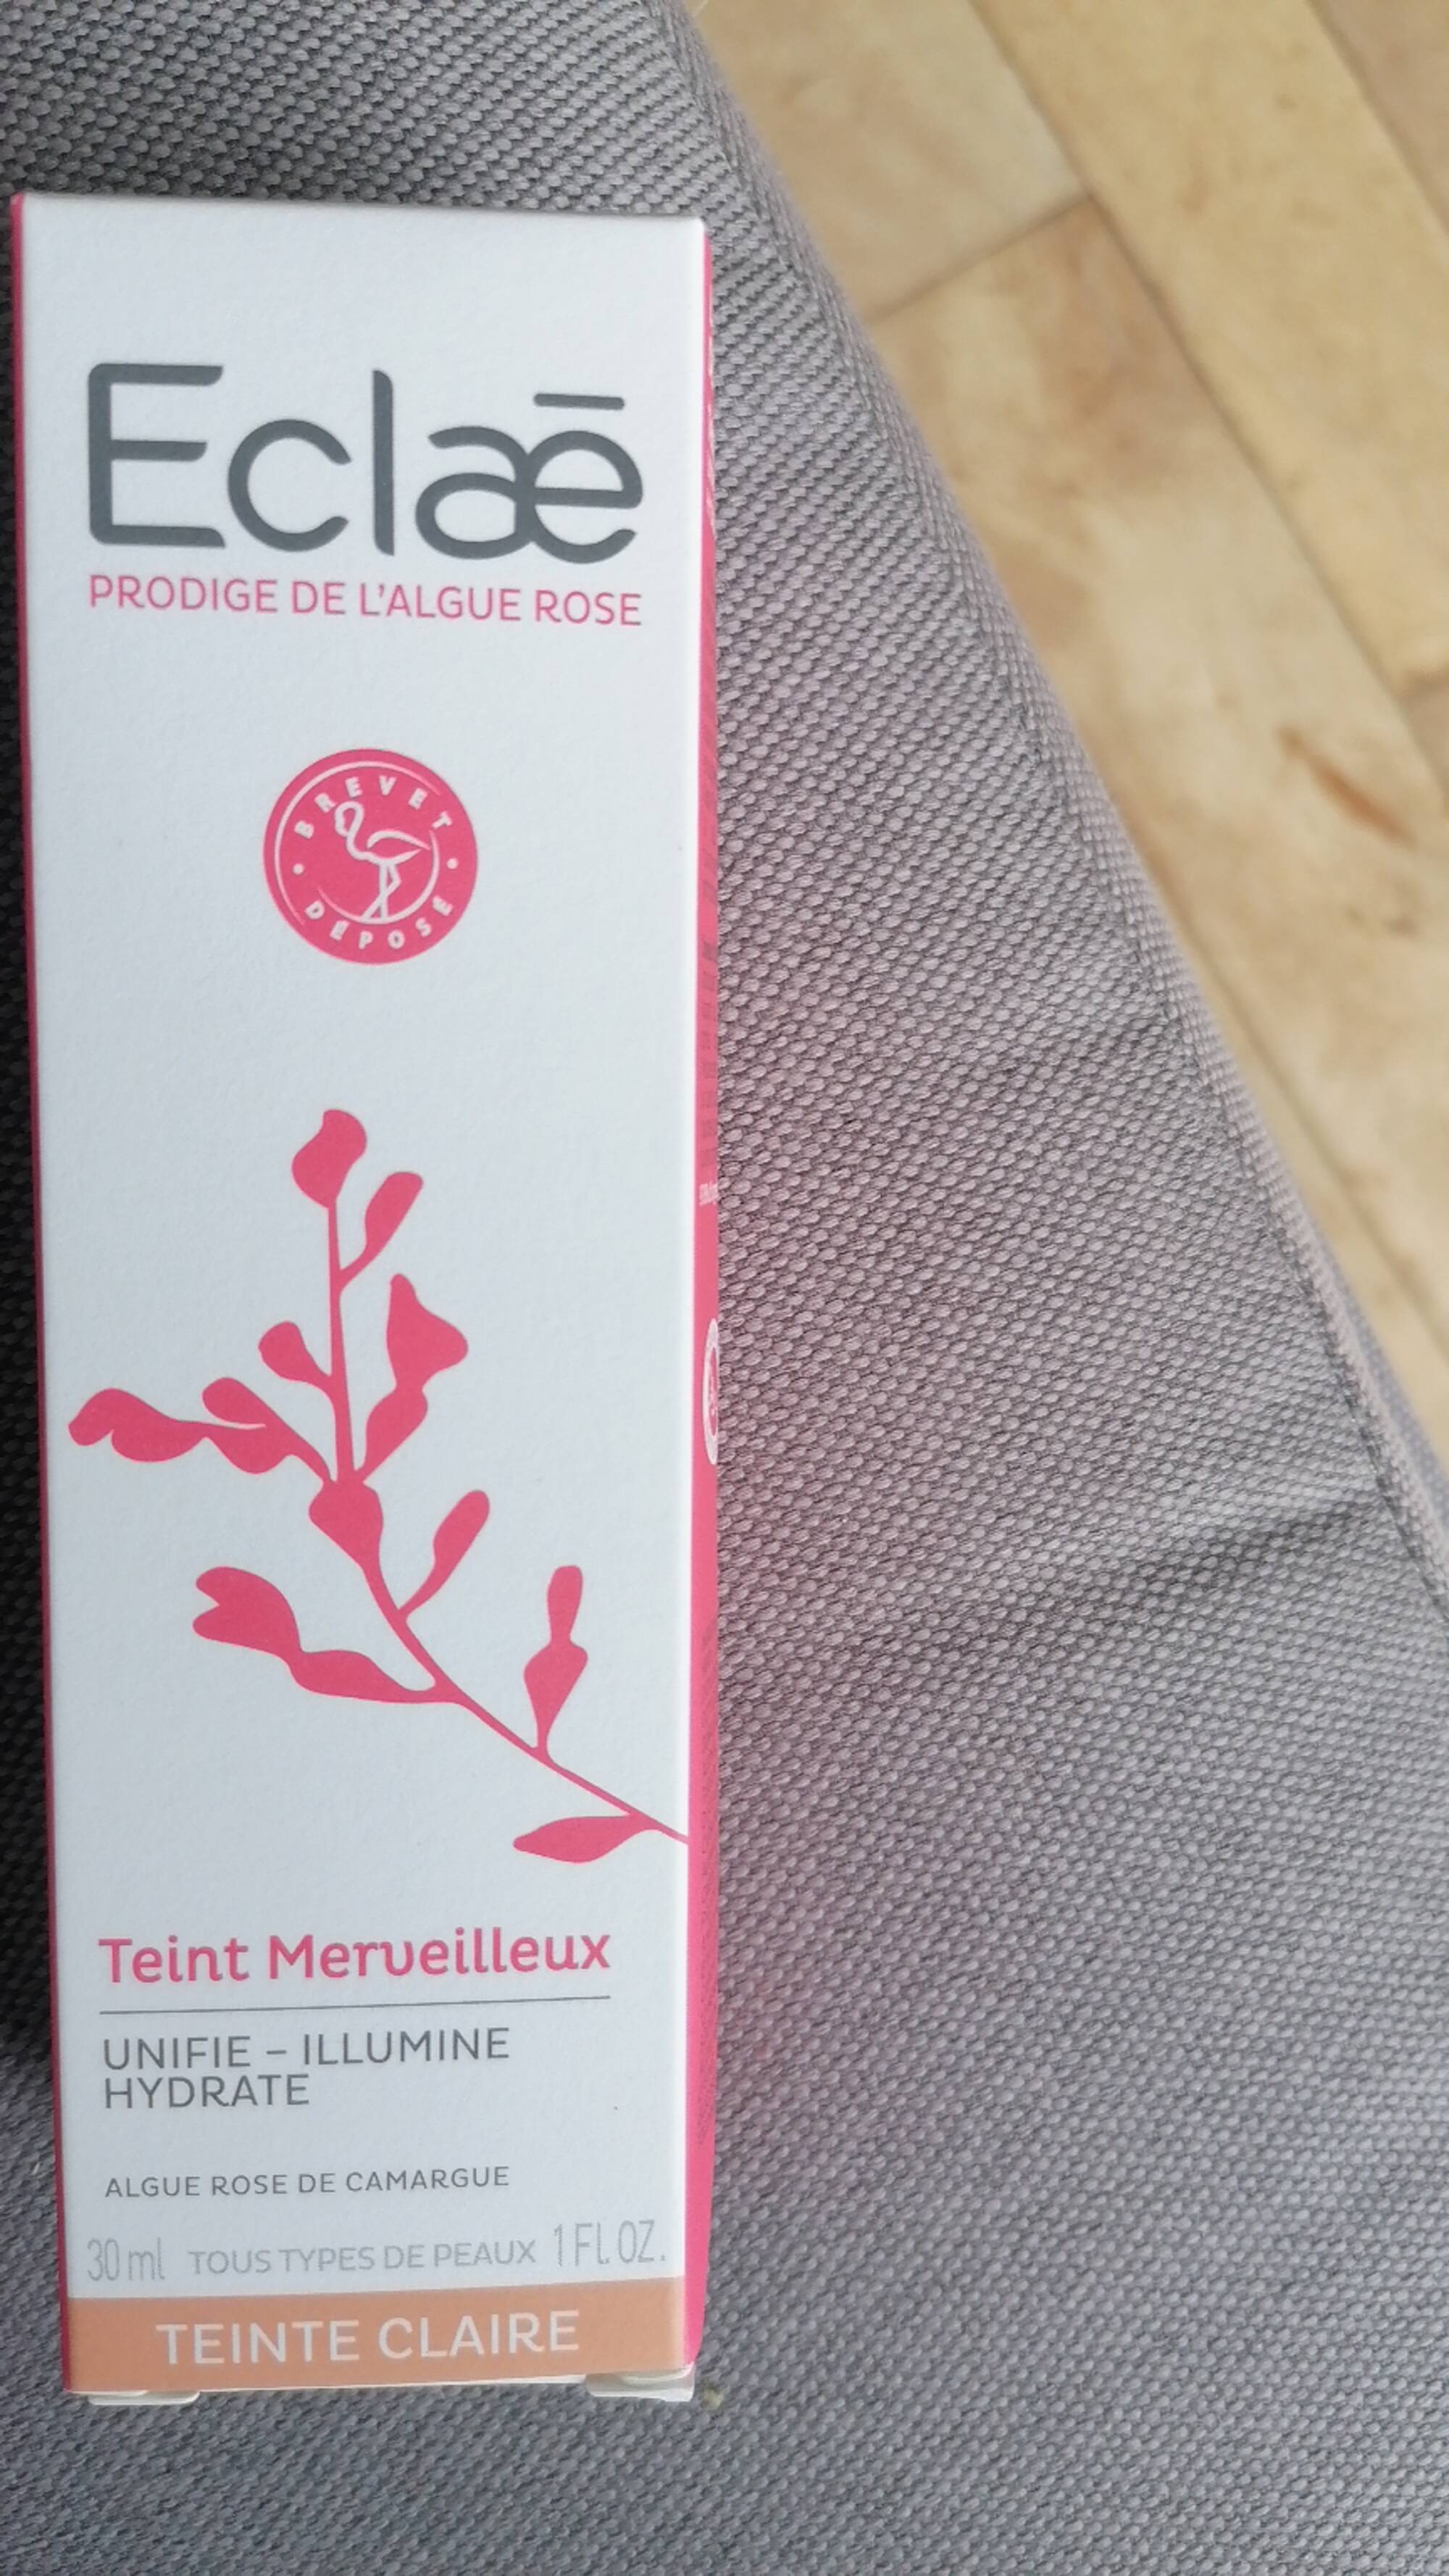 ECLAE - Algue rose de camargue - Teint merveilleux 